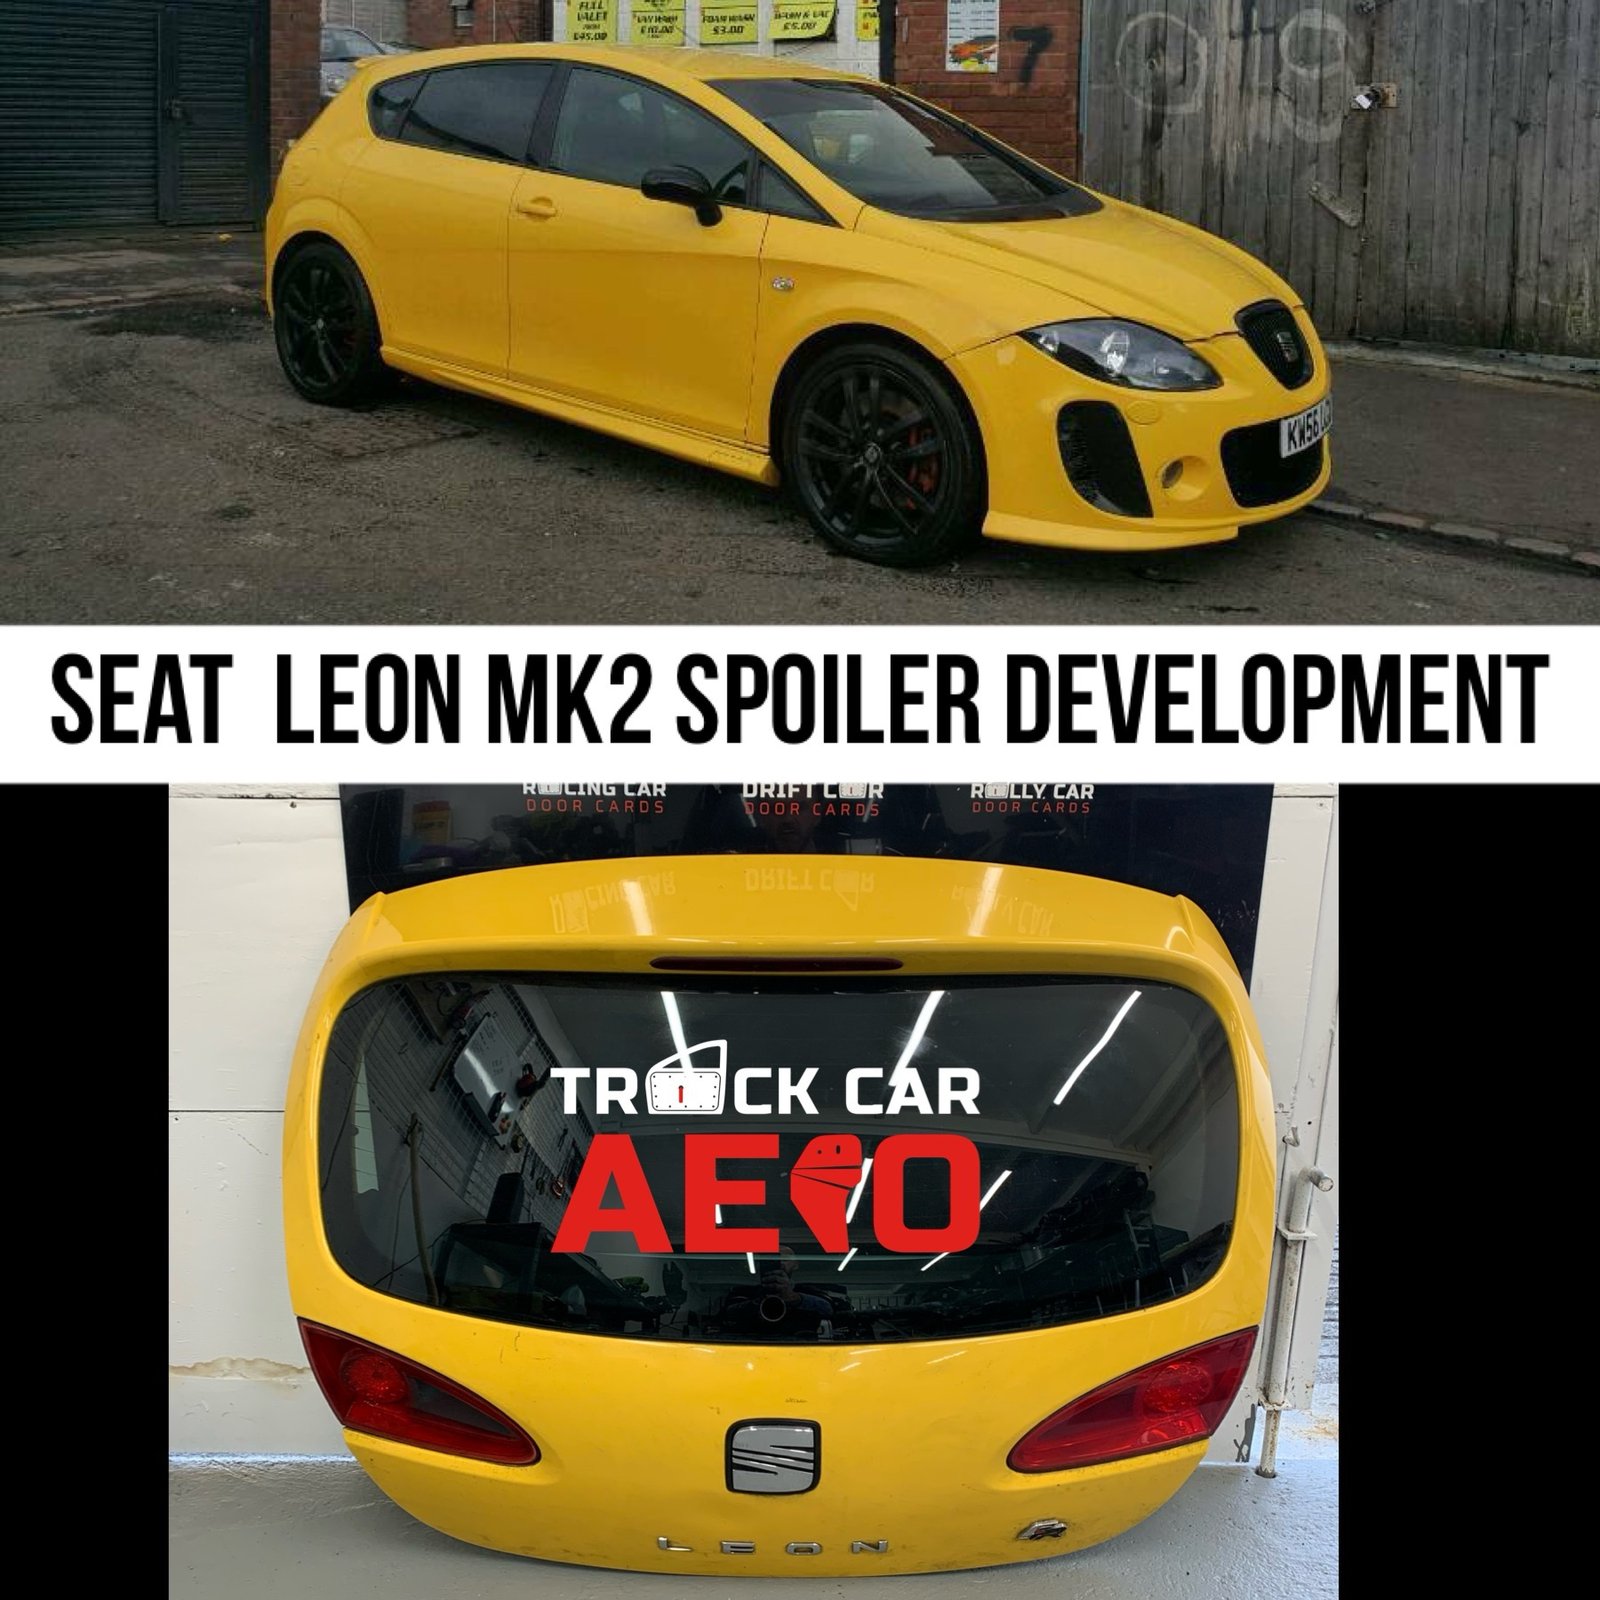 Seat Leon MK2 Wing - Under development